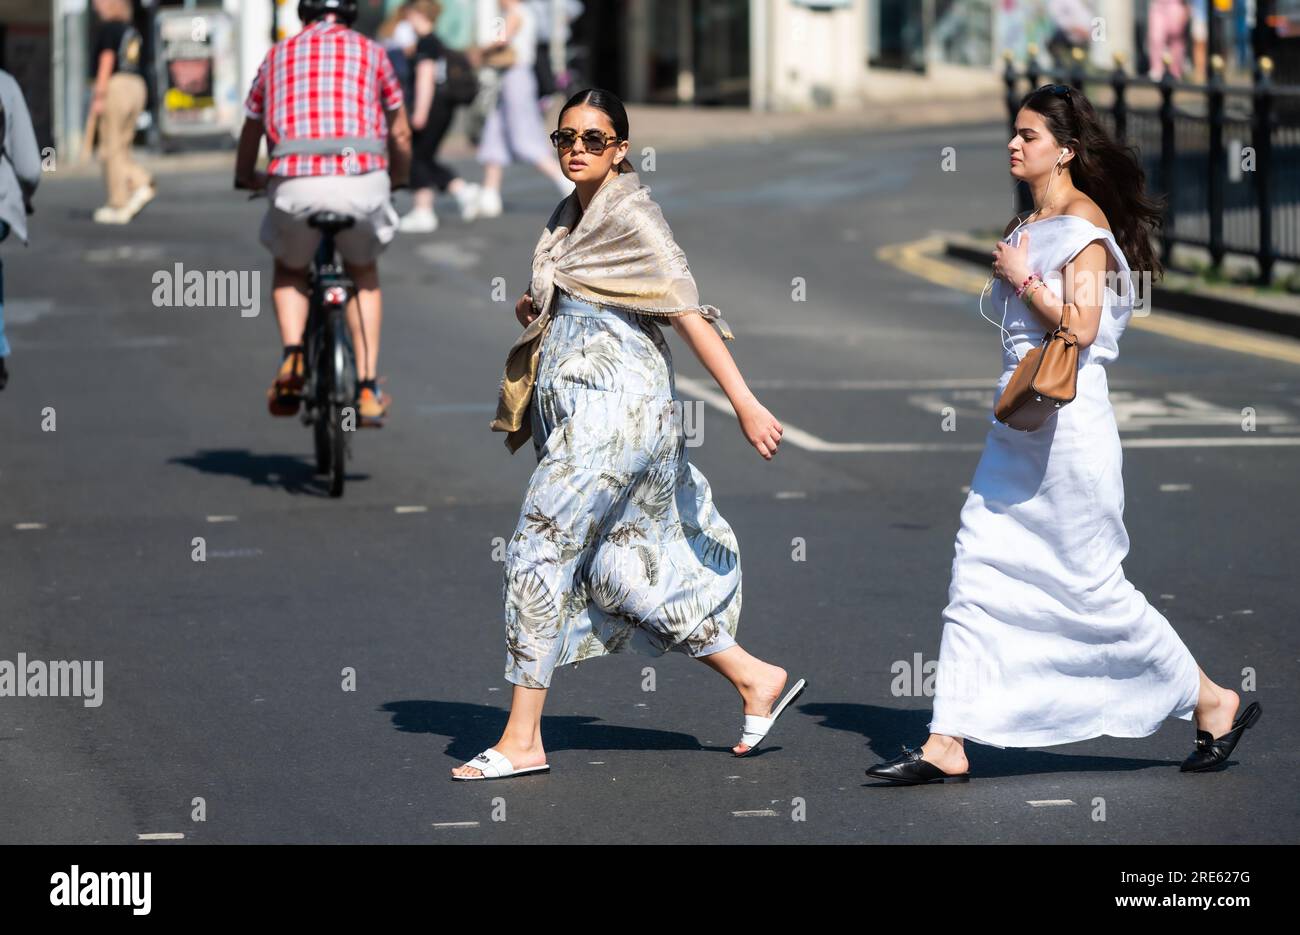 Zwei junge Frauen, die im Sommer eine belebte Straße überqueren könnten, sehen gut gekleidet, elegant, selbstbewusst und stilvoll aus. In Brighton & Hove, England, Großbritannien. Stockfoto